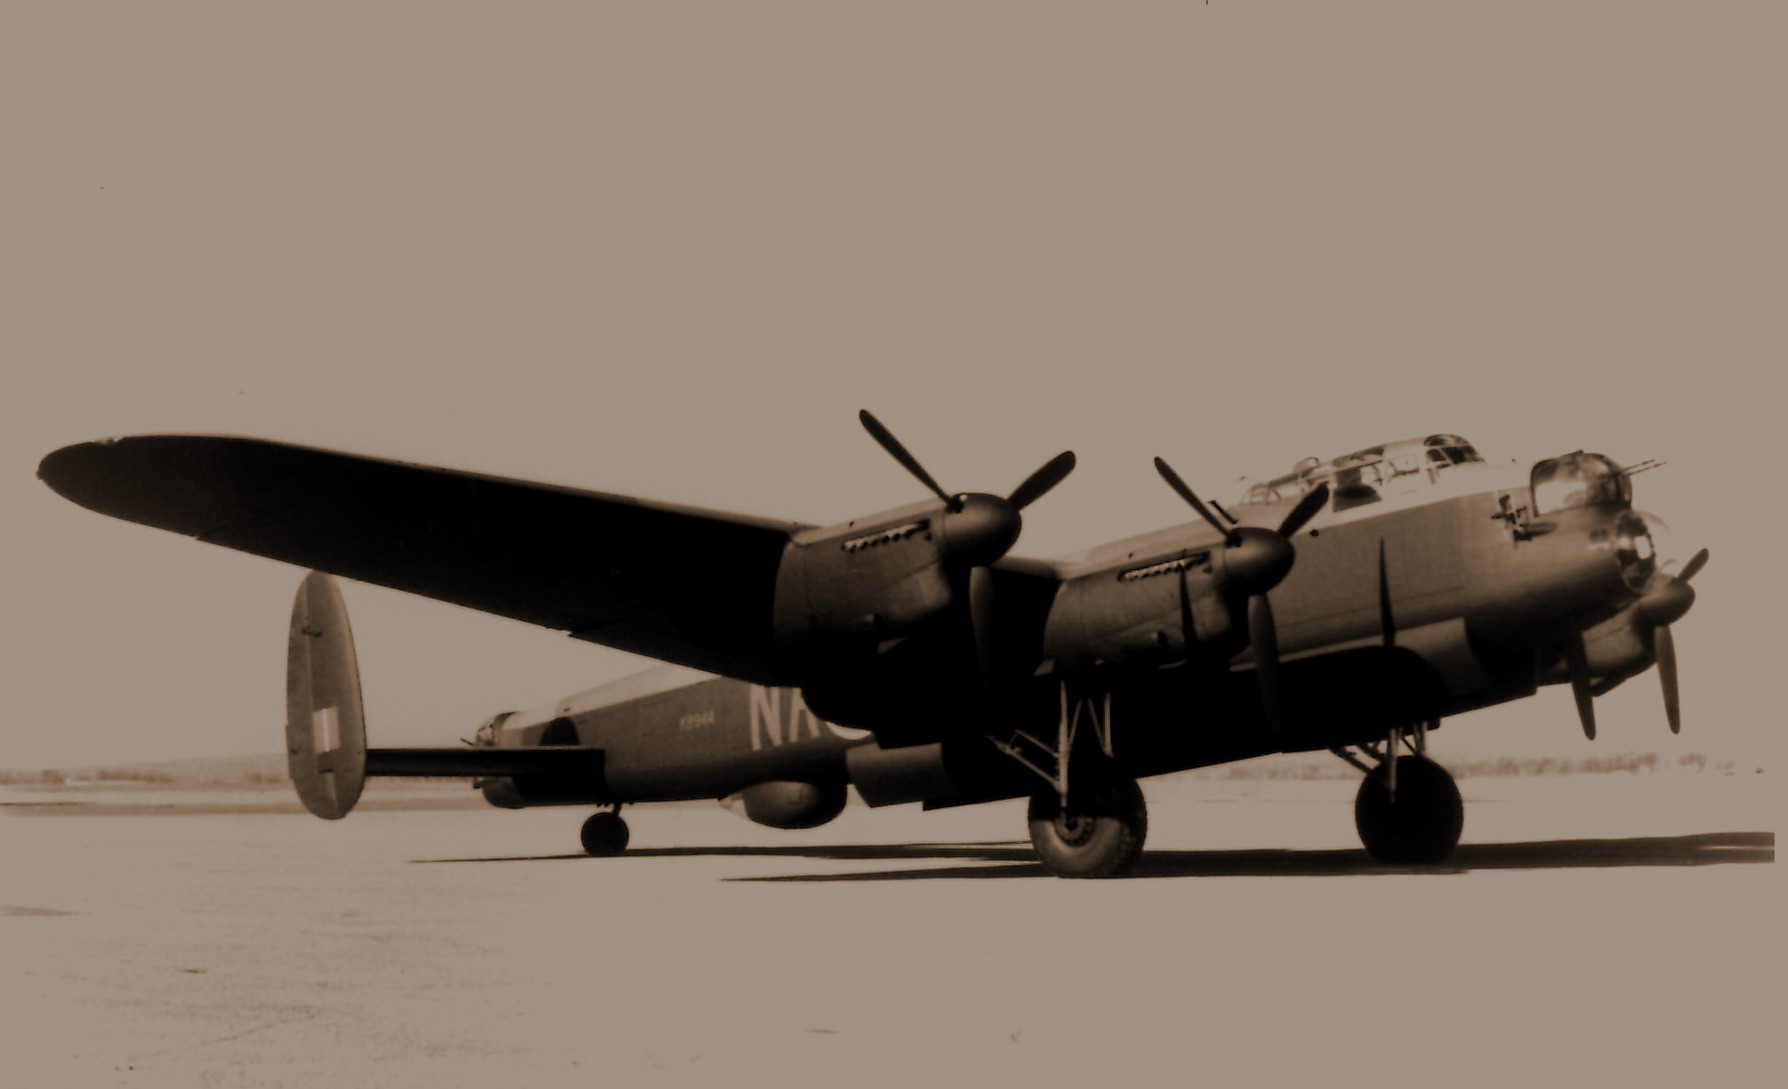 An Avro Lancaster bomber